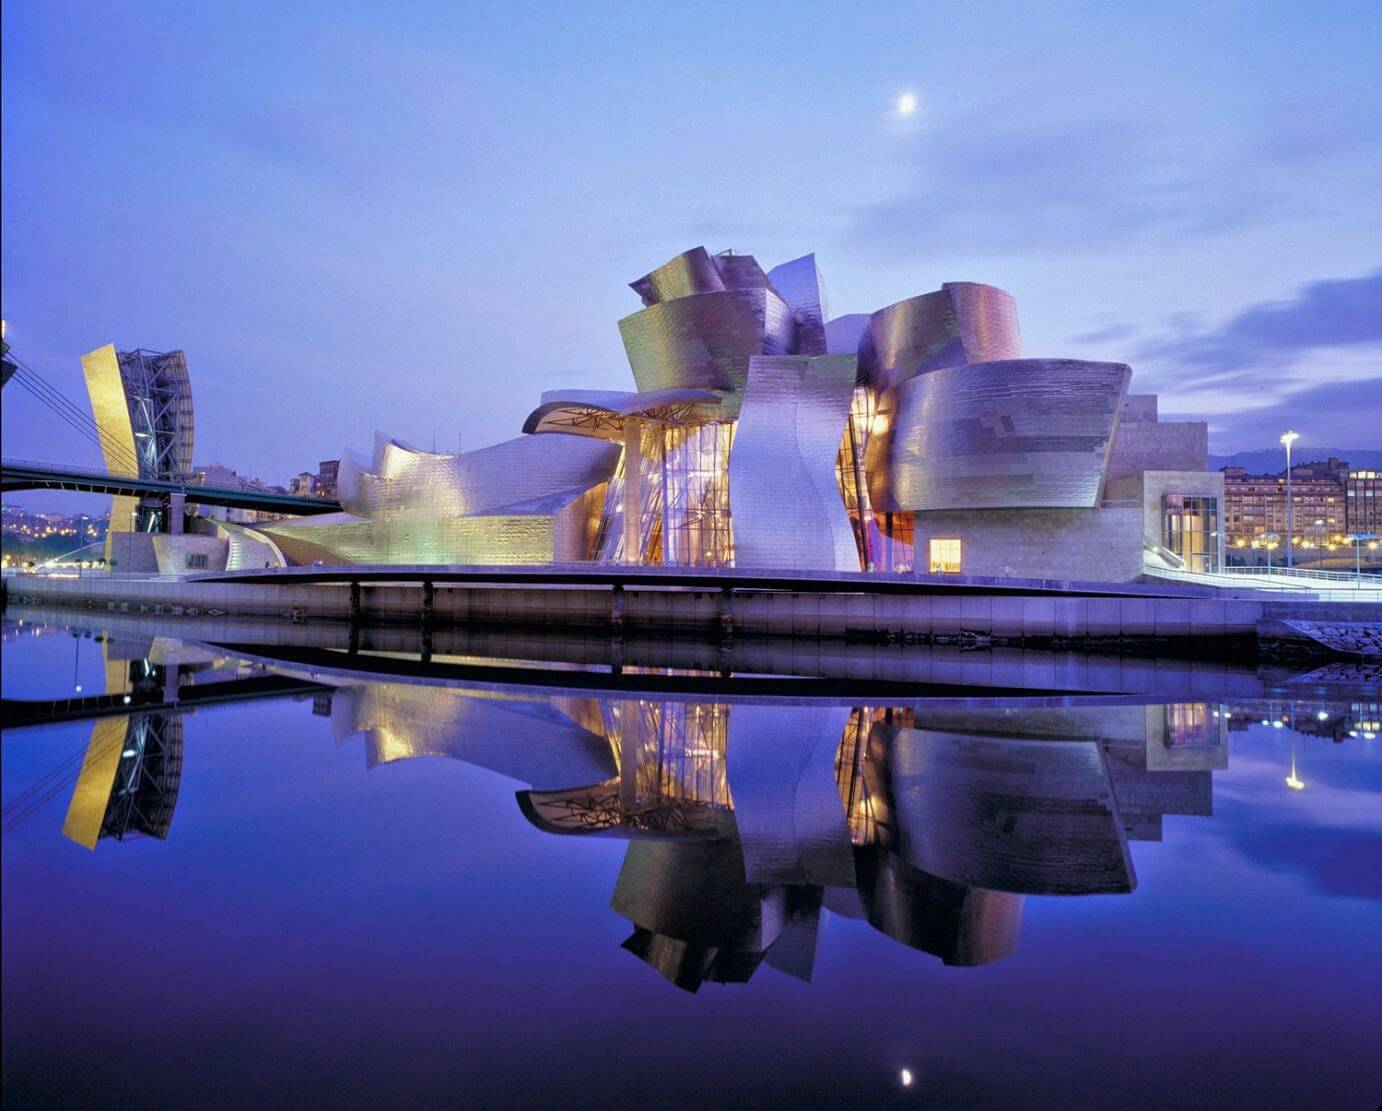 Guggenheim Museum Bilbao Witness Amazing Architecture To Make Your